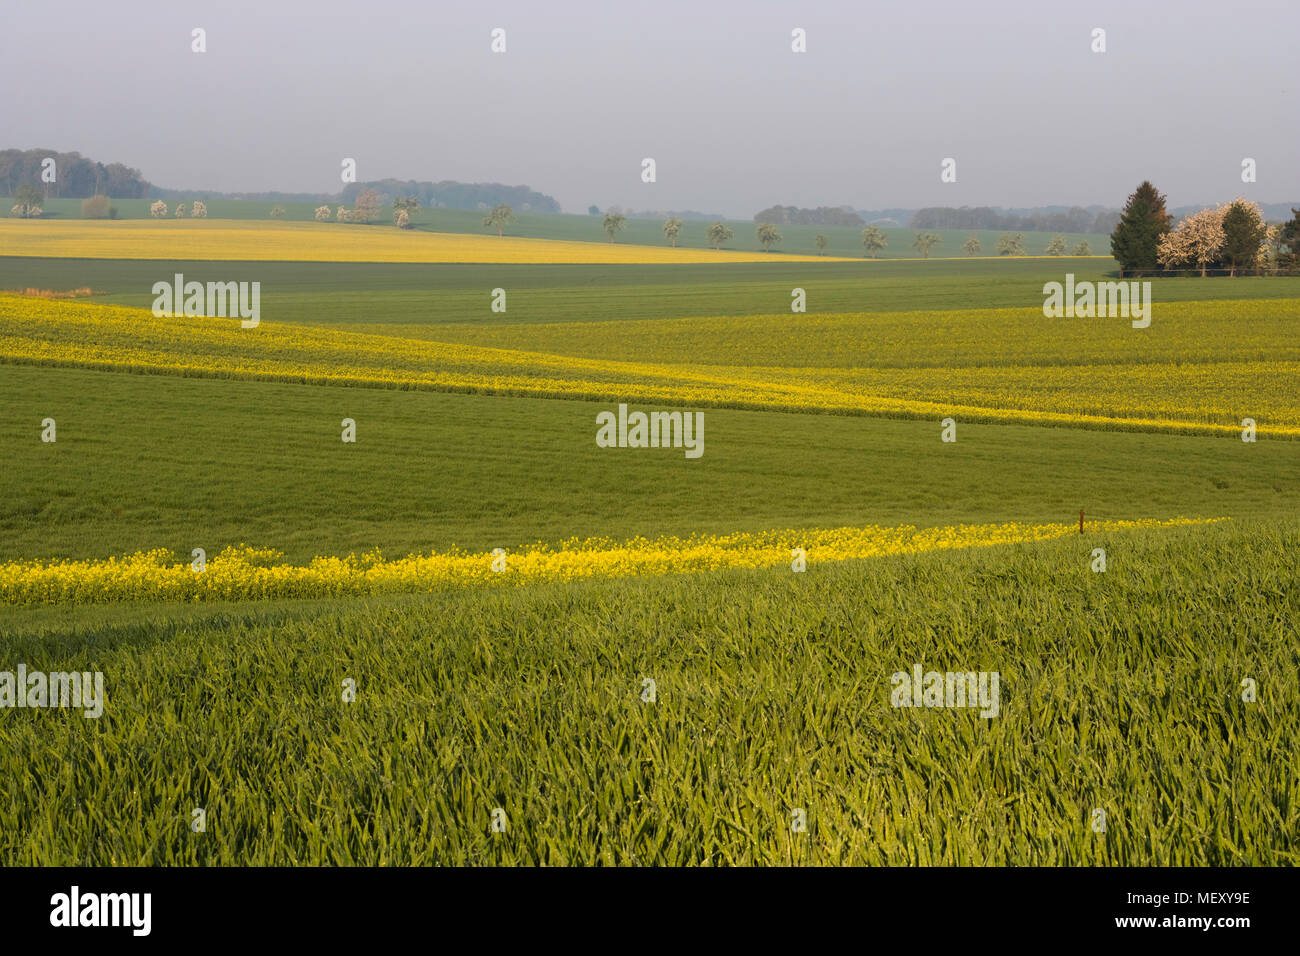 Zig Zag Yellow and Green Farmland Fields, Raps Fields in Blossom, Simple Geometry, Saxony, Germany Stock Photo